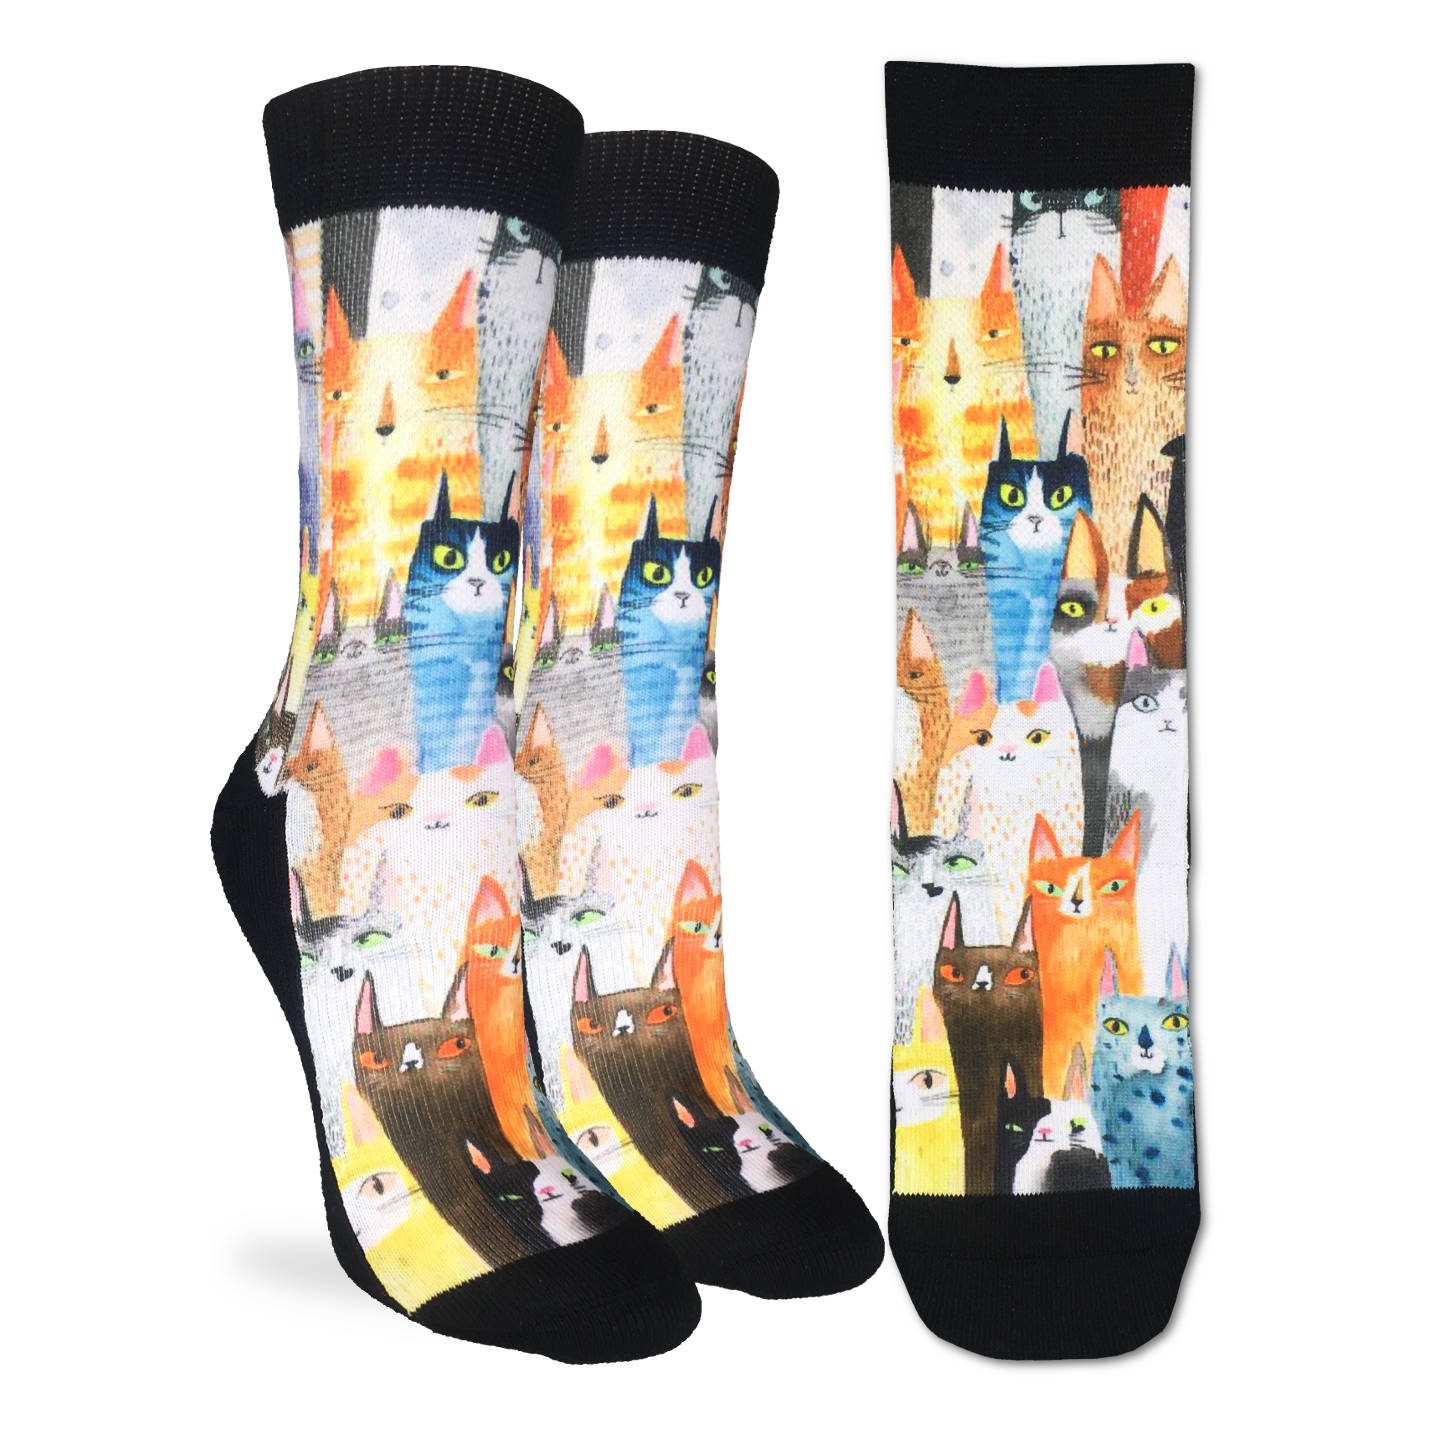 Women's Cat Party Socks - Shoe Size 5-9